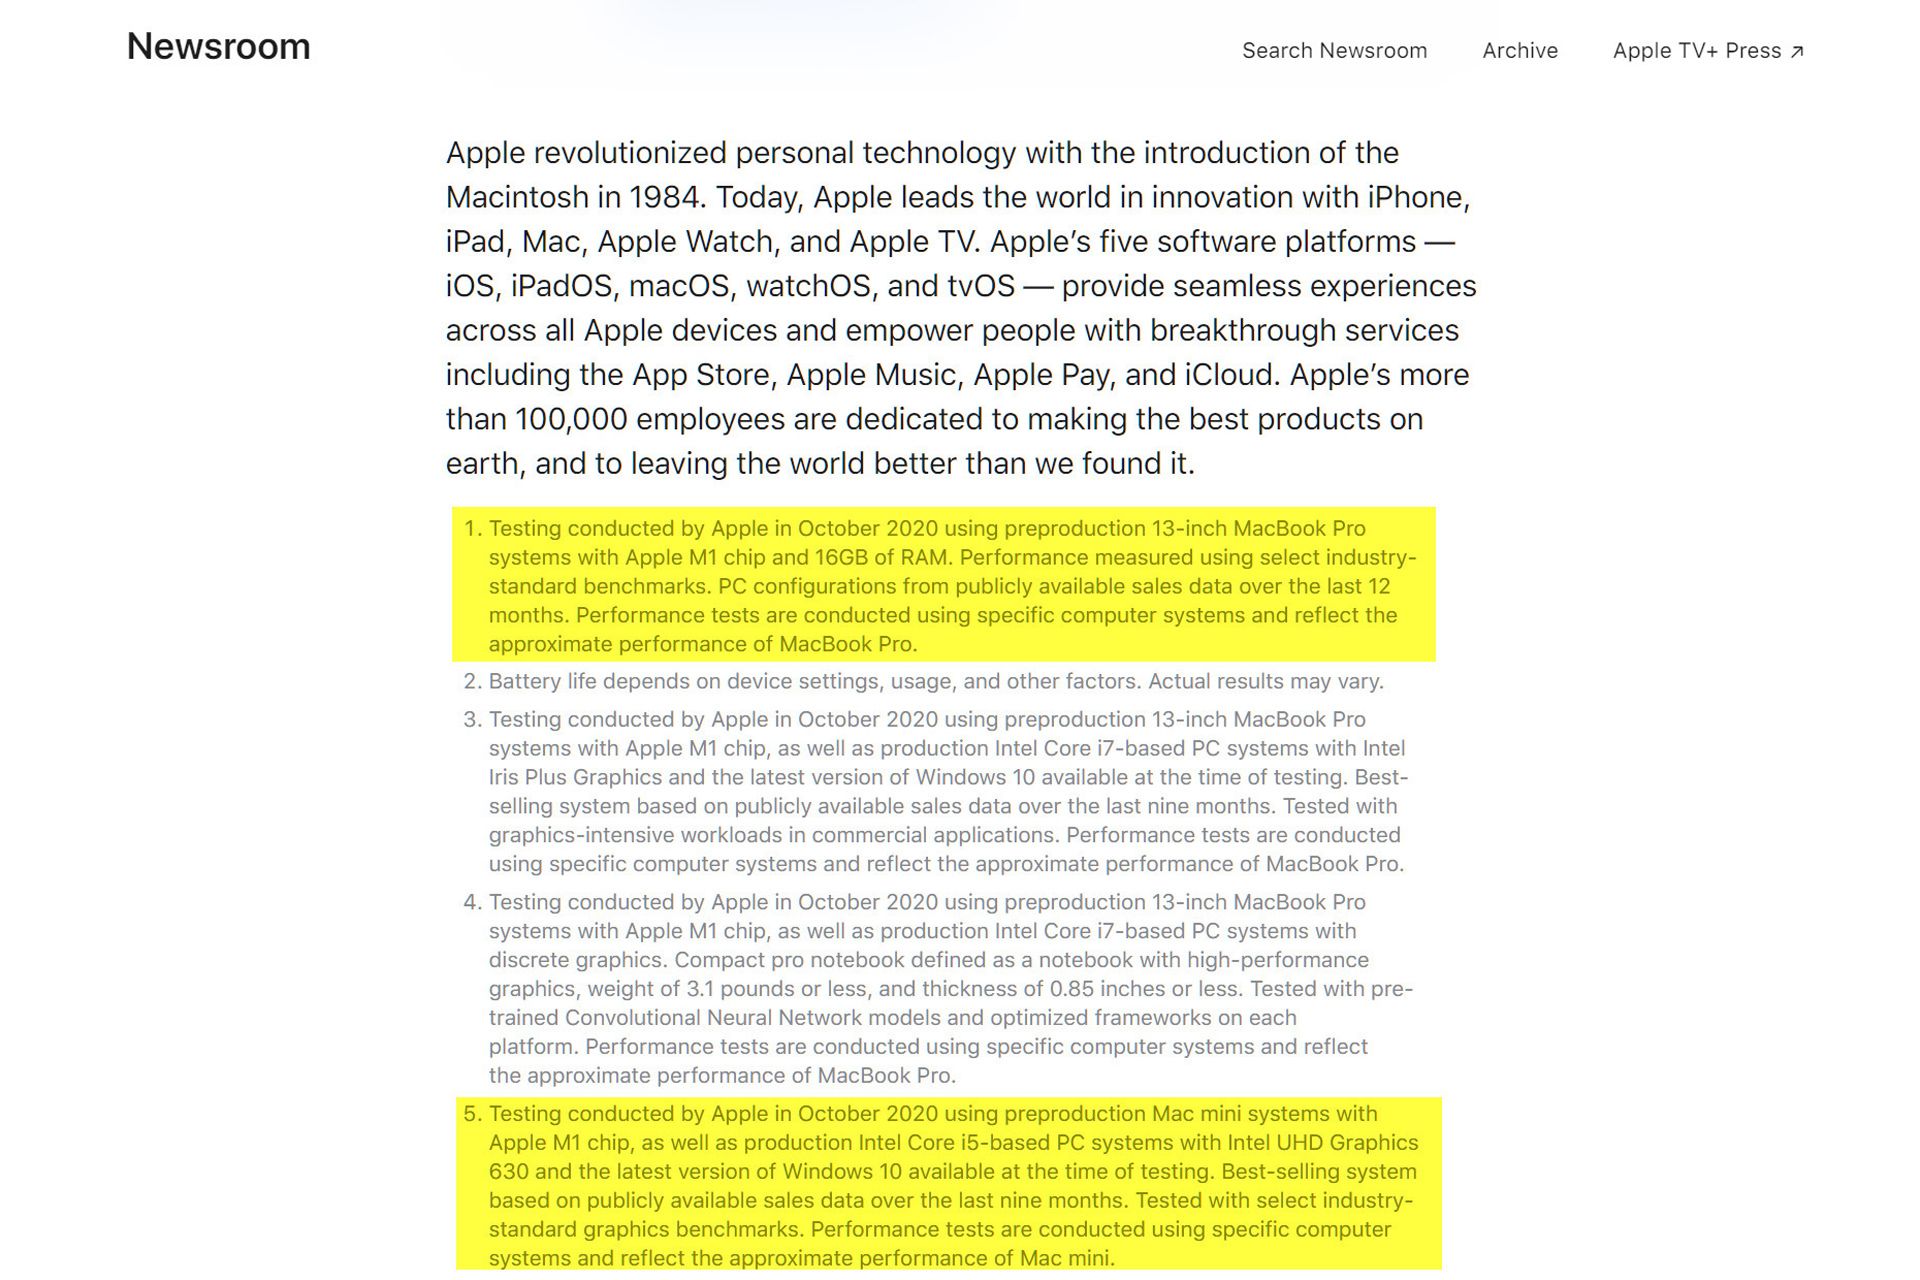 متن وب سایت اپل درباره قدرت عملکرد مک بوک ایر 2020 آرم M1